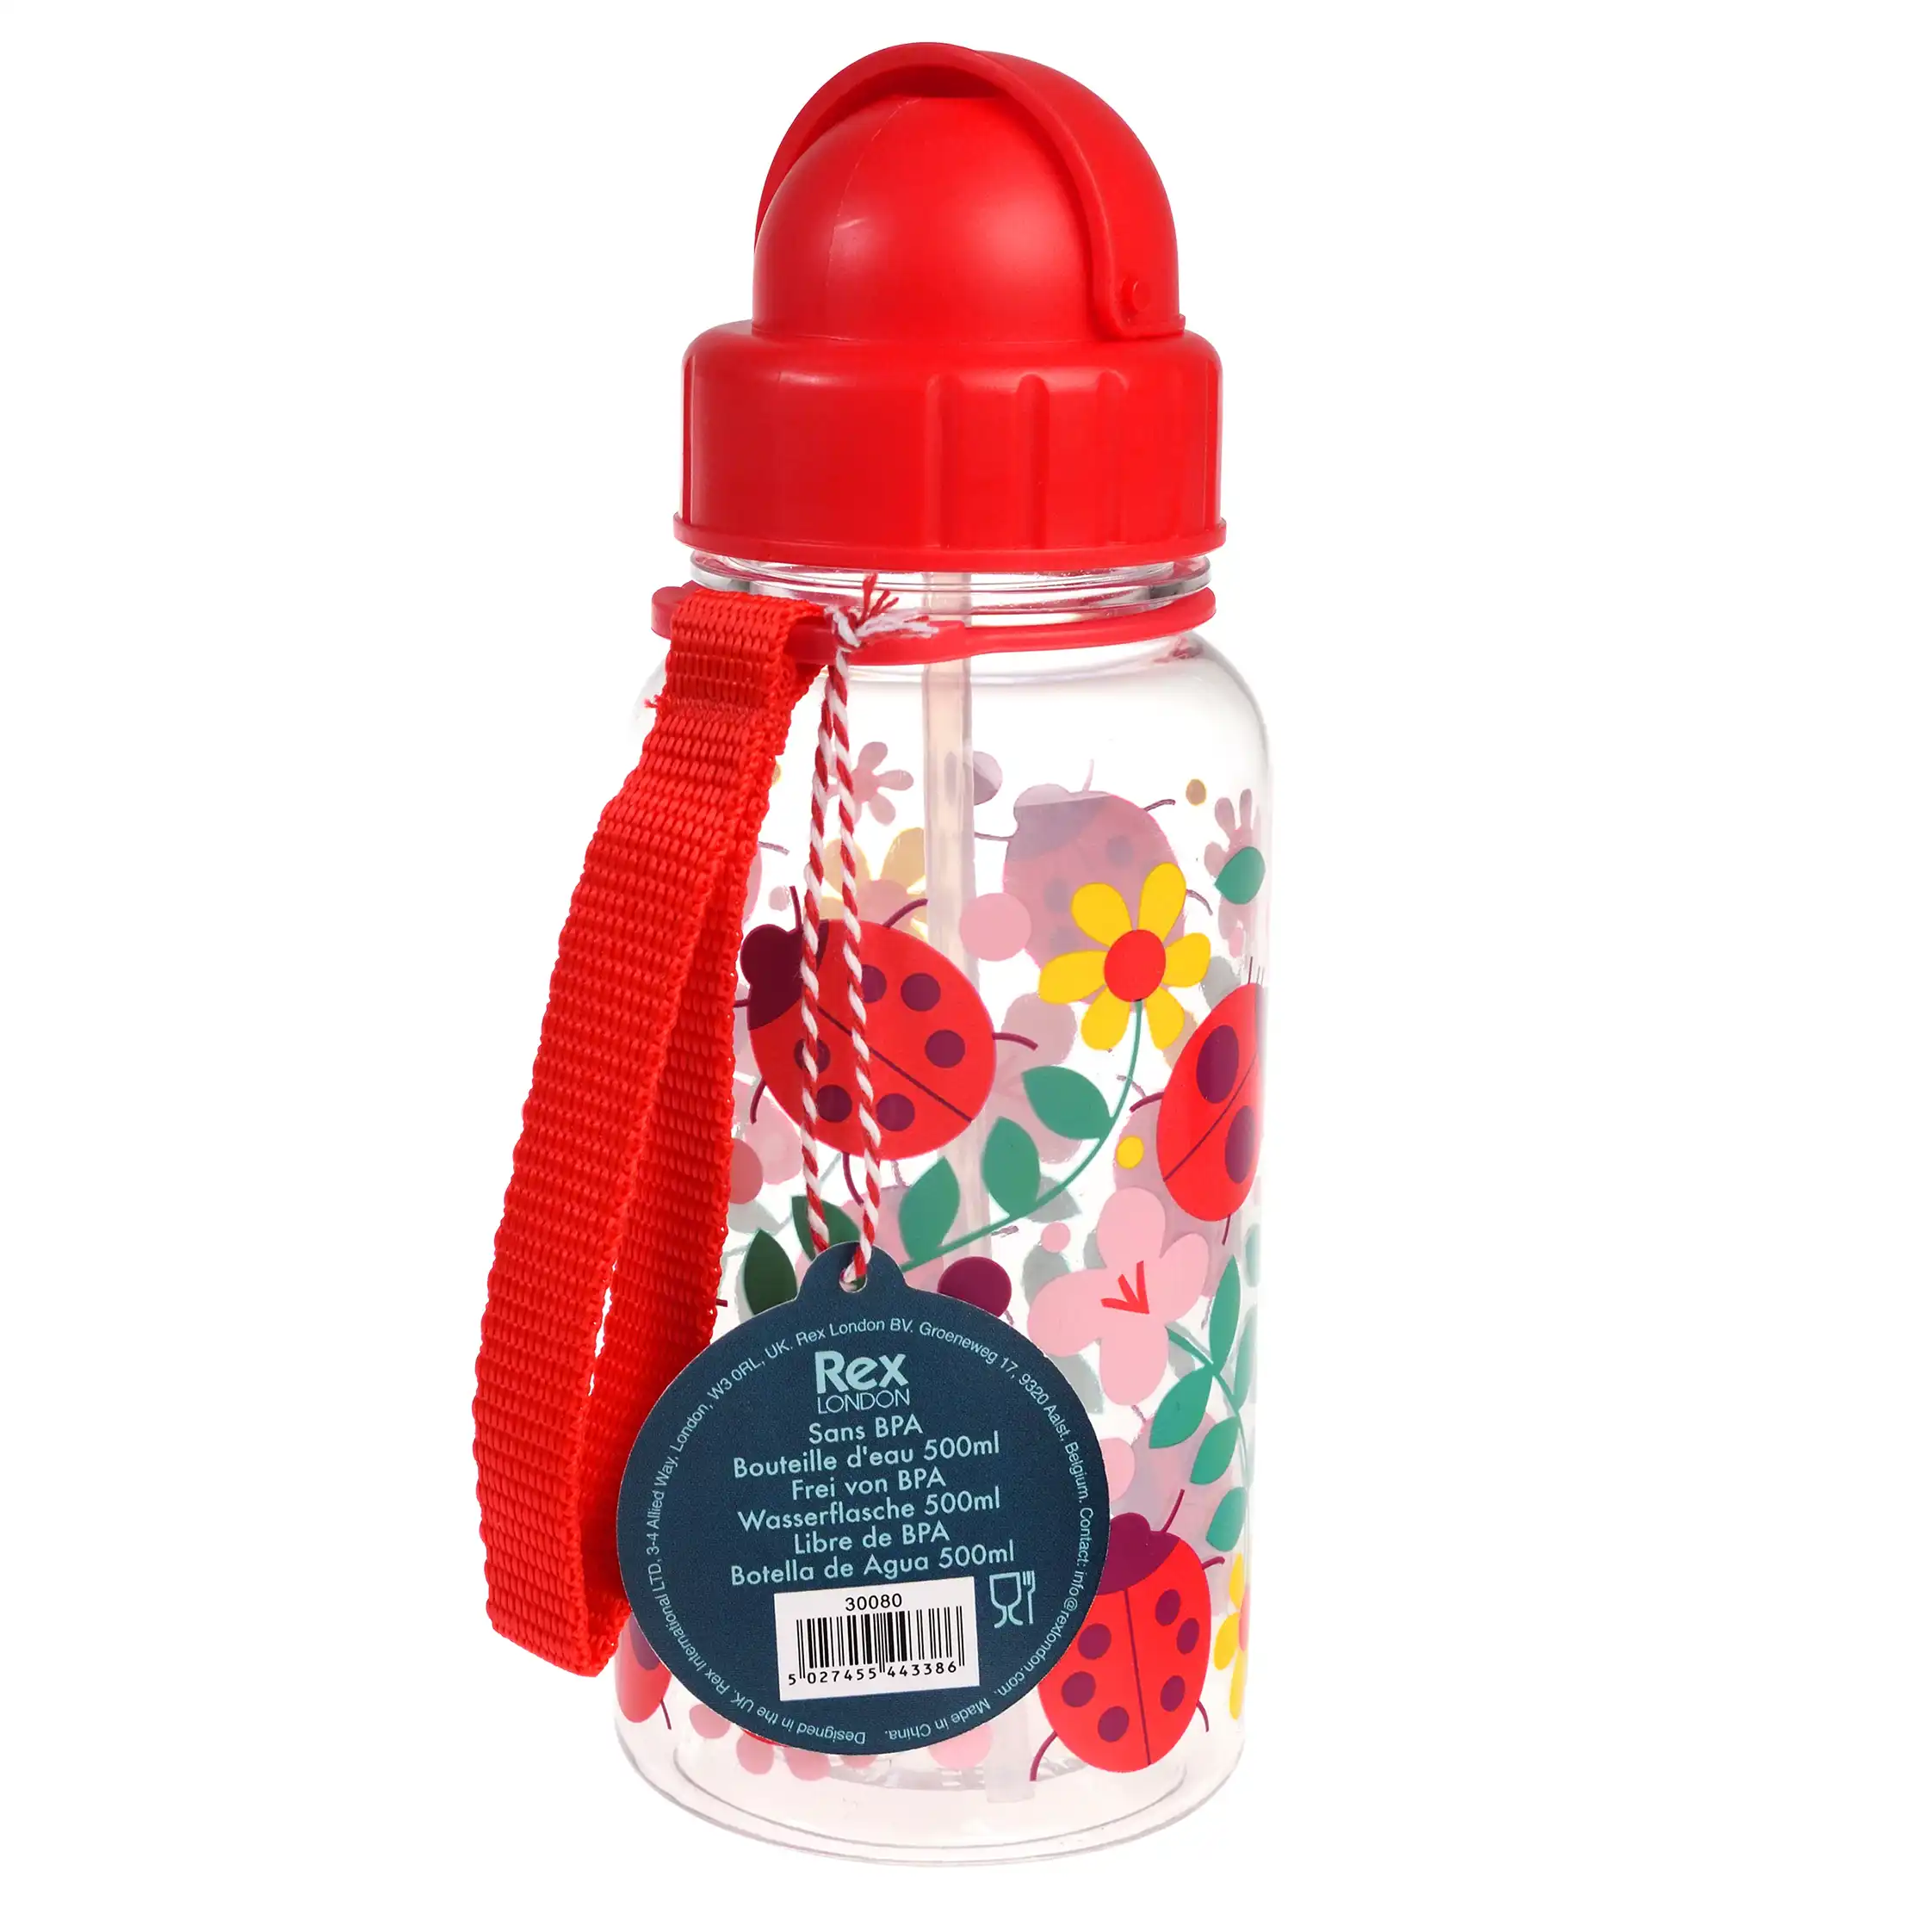 bouteille d'eau enfant ladybird 500ml